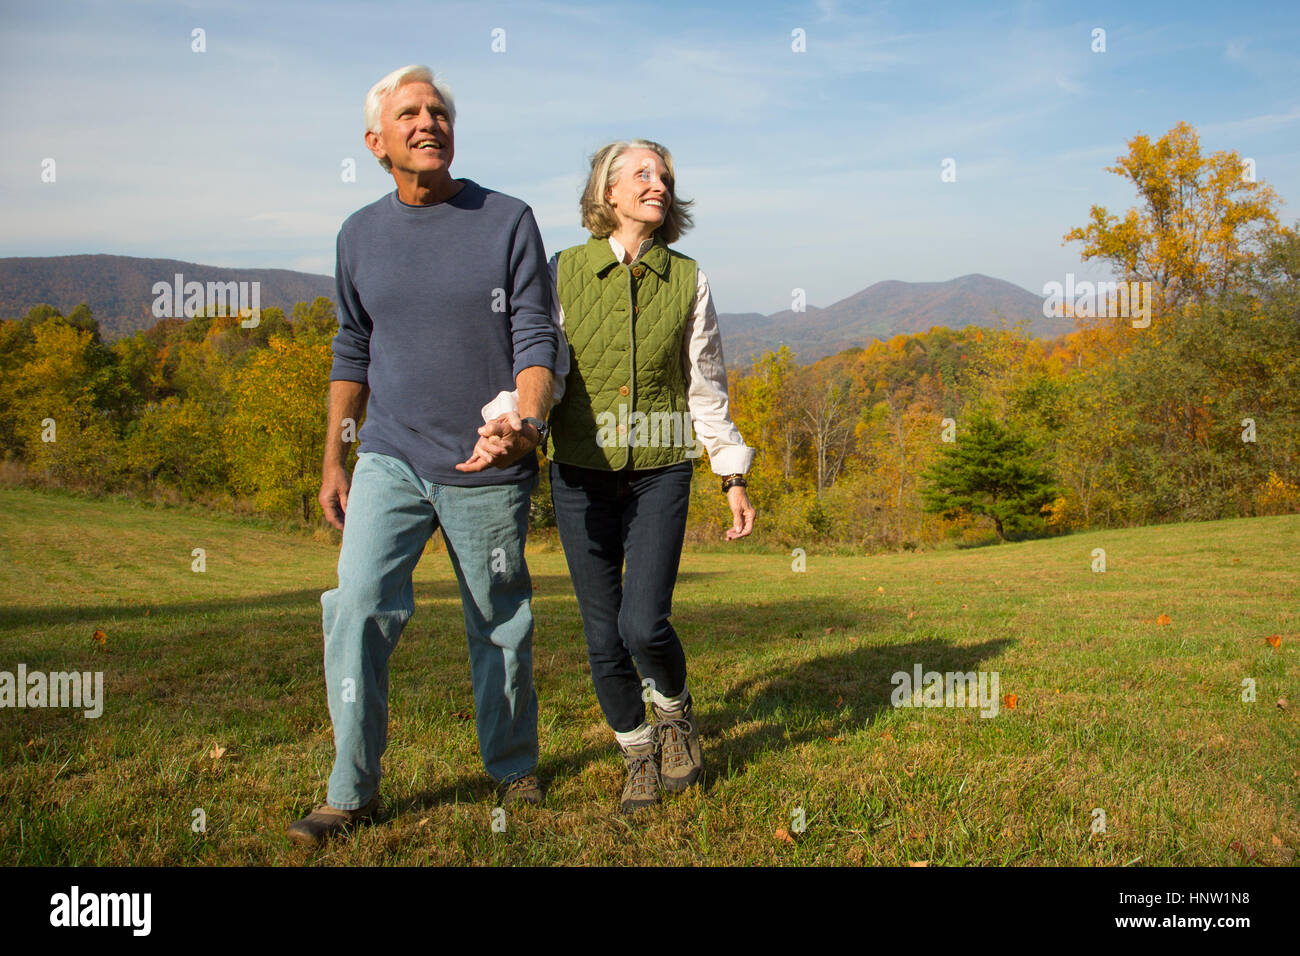 Older Caucasian couple walking in field Stock Photo